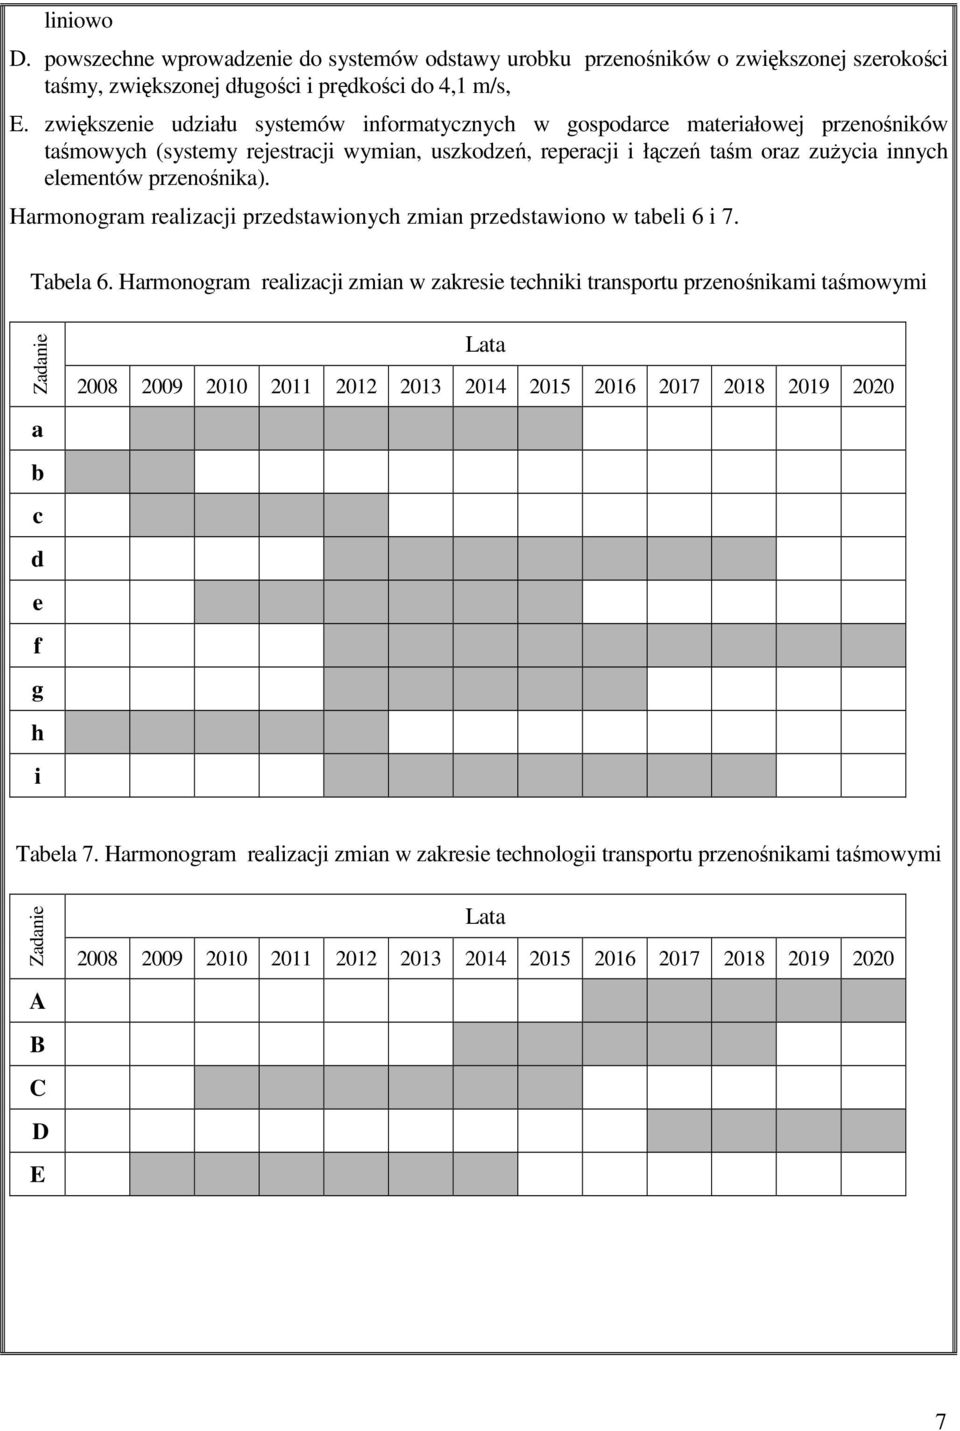 przenośnika). Harmonogram realizacji przedstawionych zmian przedstawiono w tabeli 6 i 7. Tabela 6.